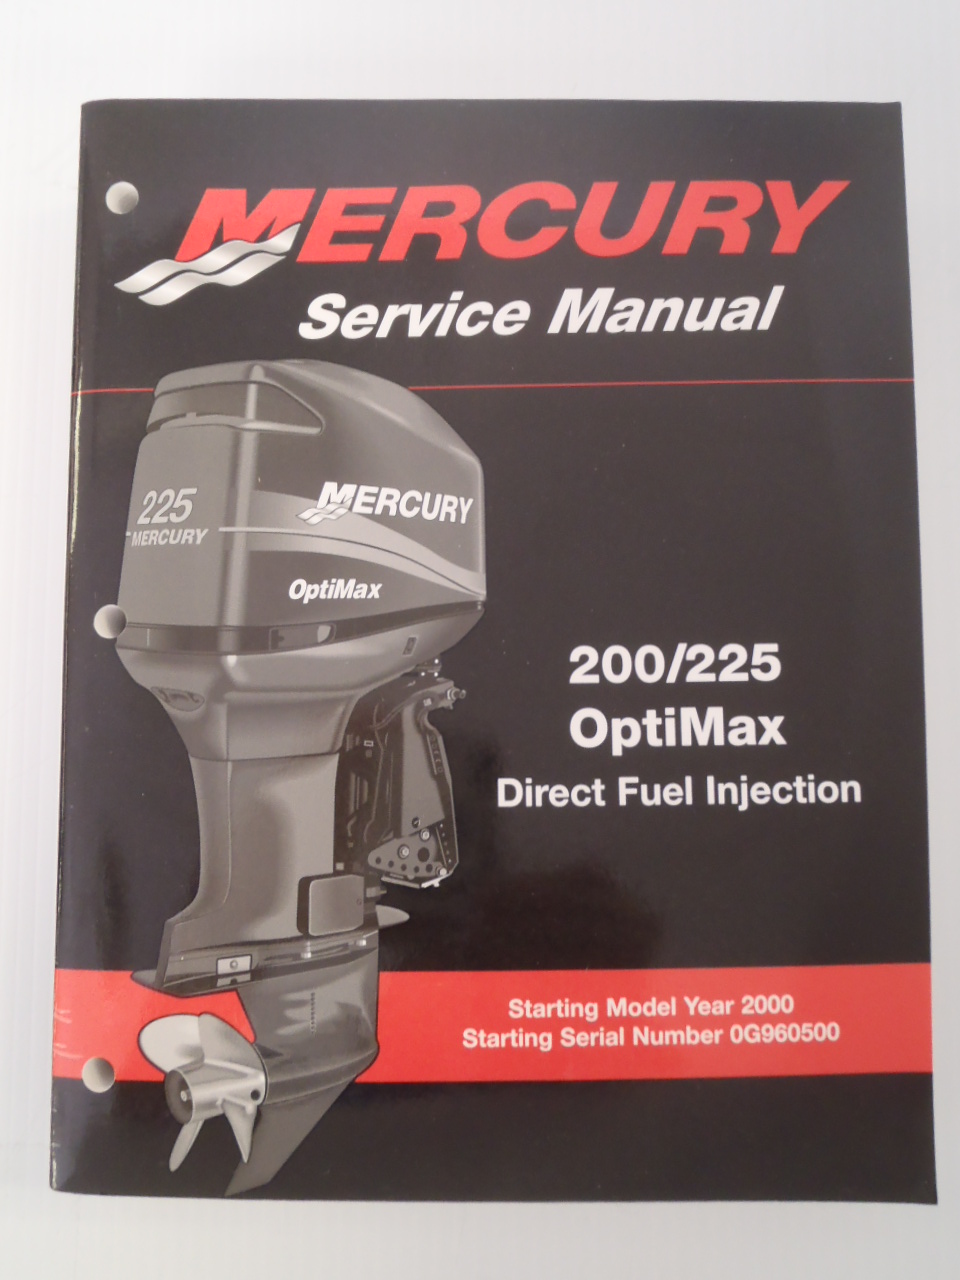 Verado 250 Service Manual Free Download